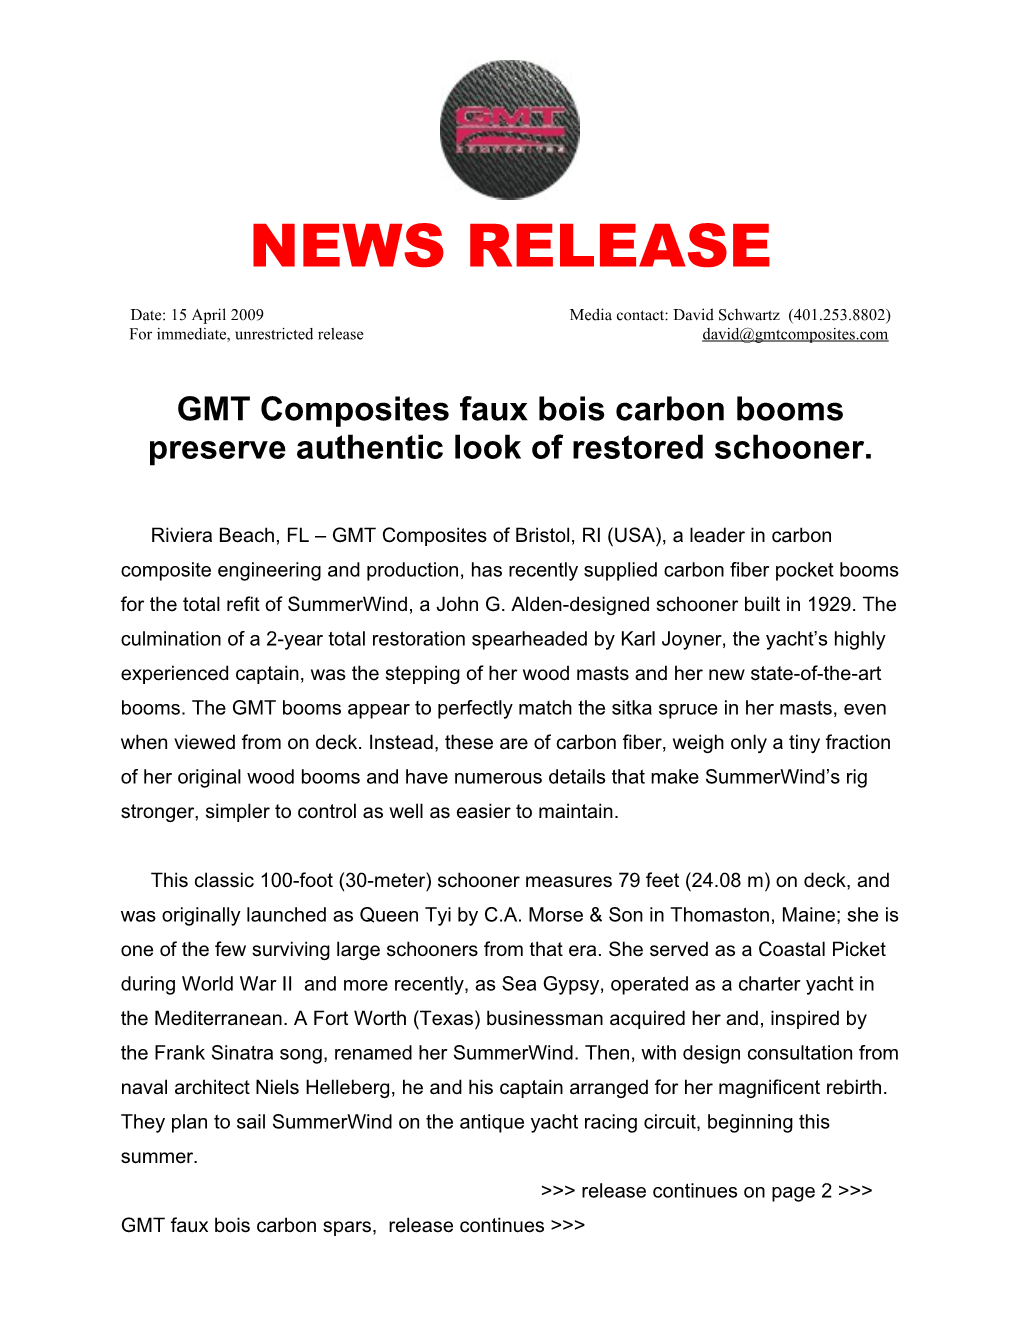 GMT Composites Faux Bois Carbon Booms